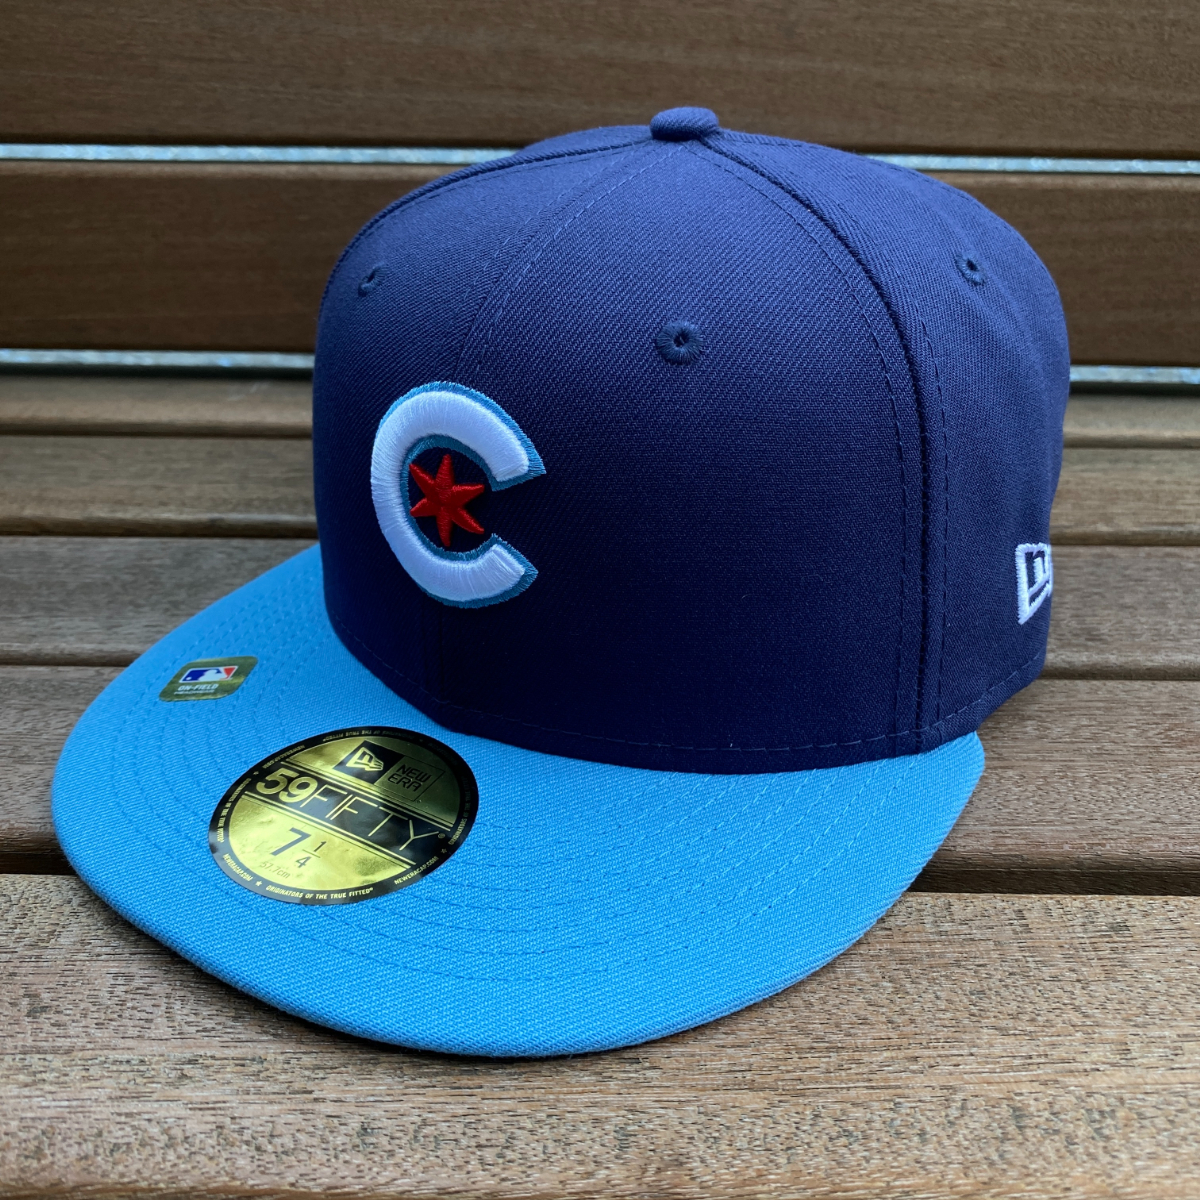 限定モデル 【8】 NEWERA ニューエラ MLB シカゴ カブス Chicago Cubs シティコネクト City Connect 59FIFTY 米国正規品 メジャー